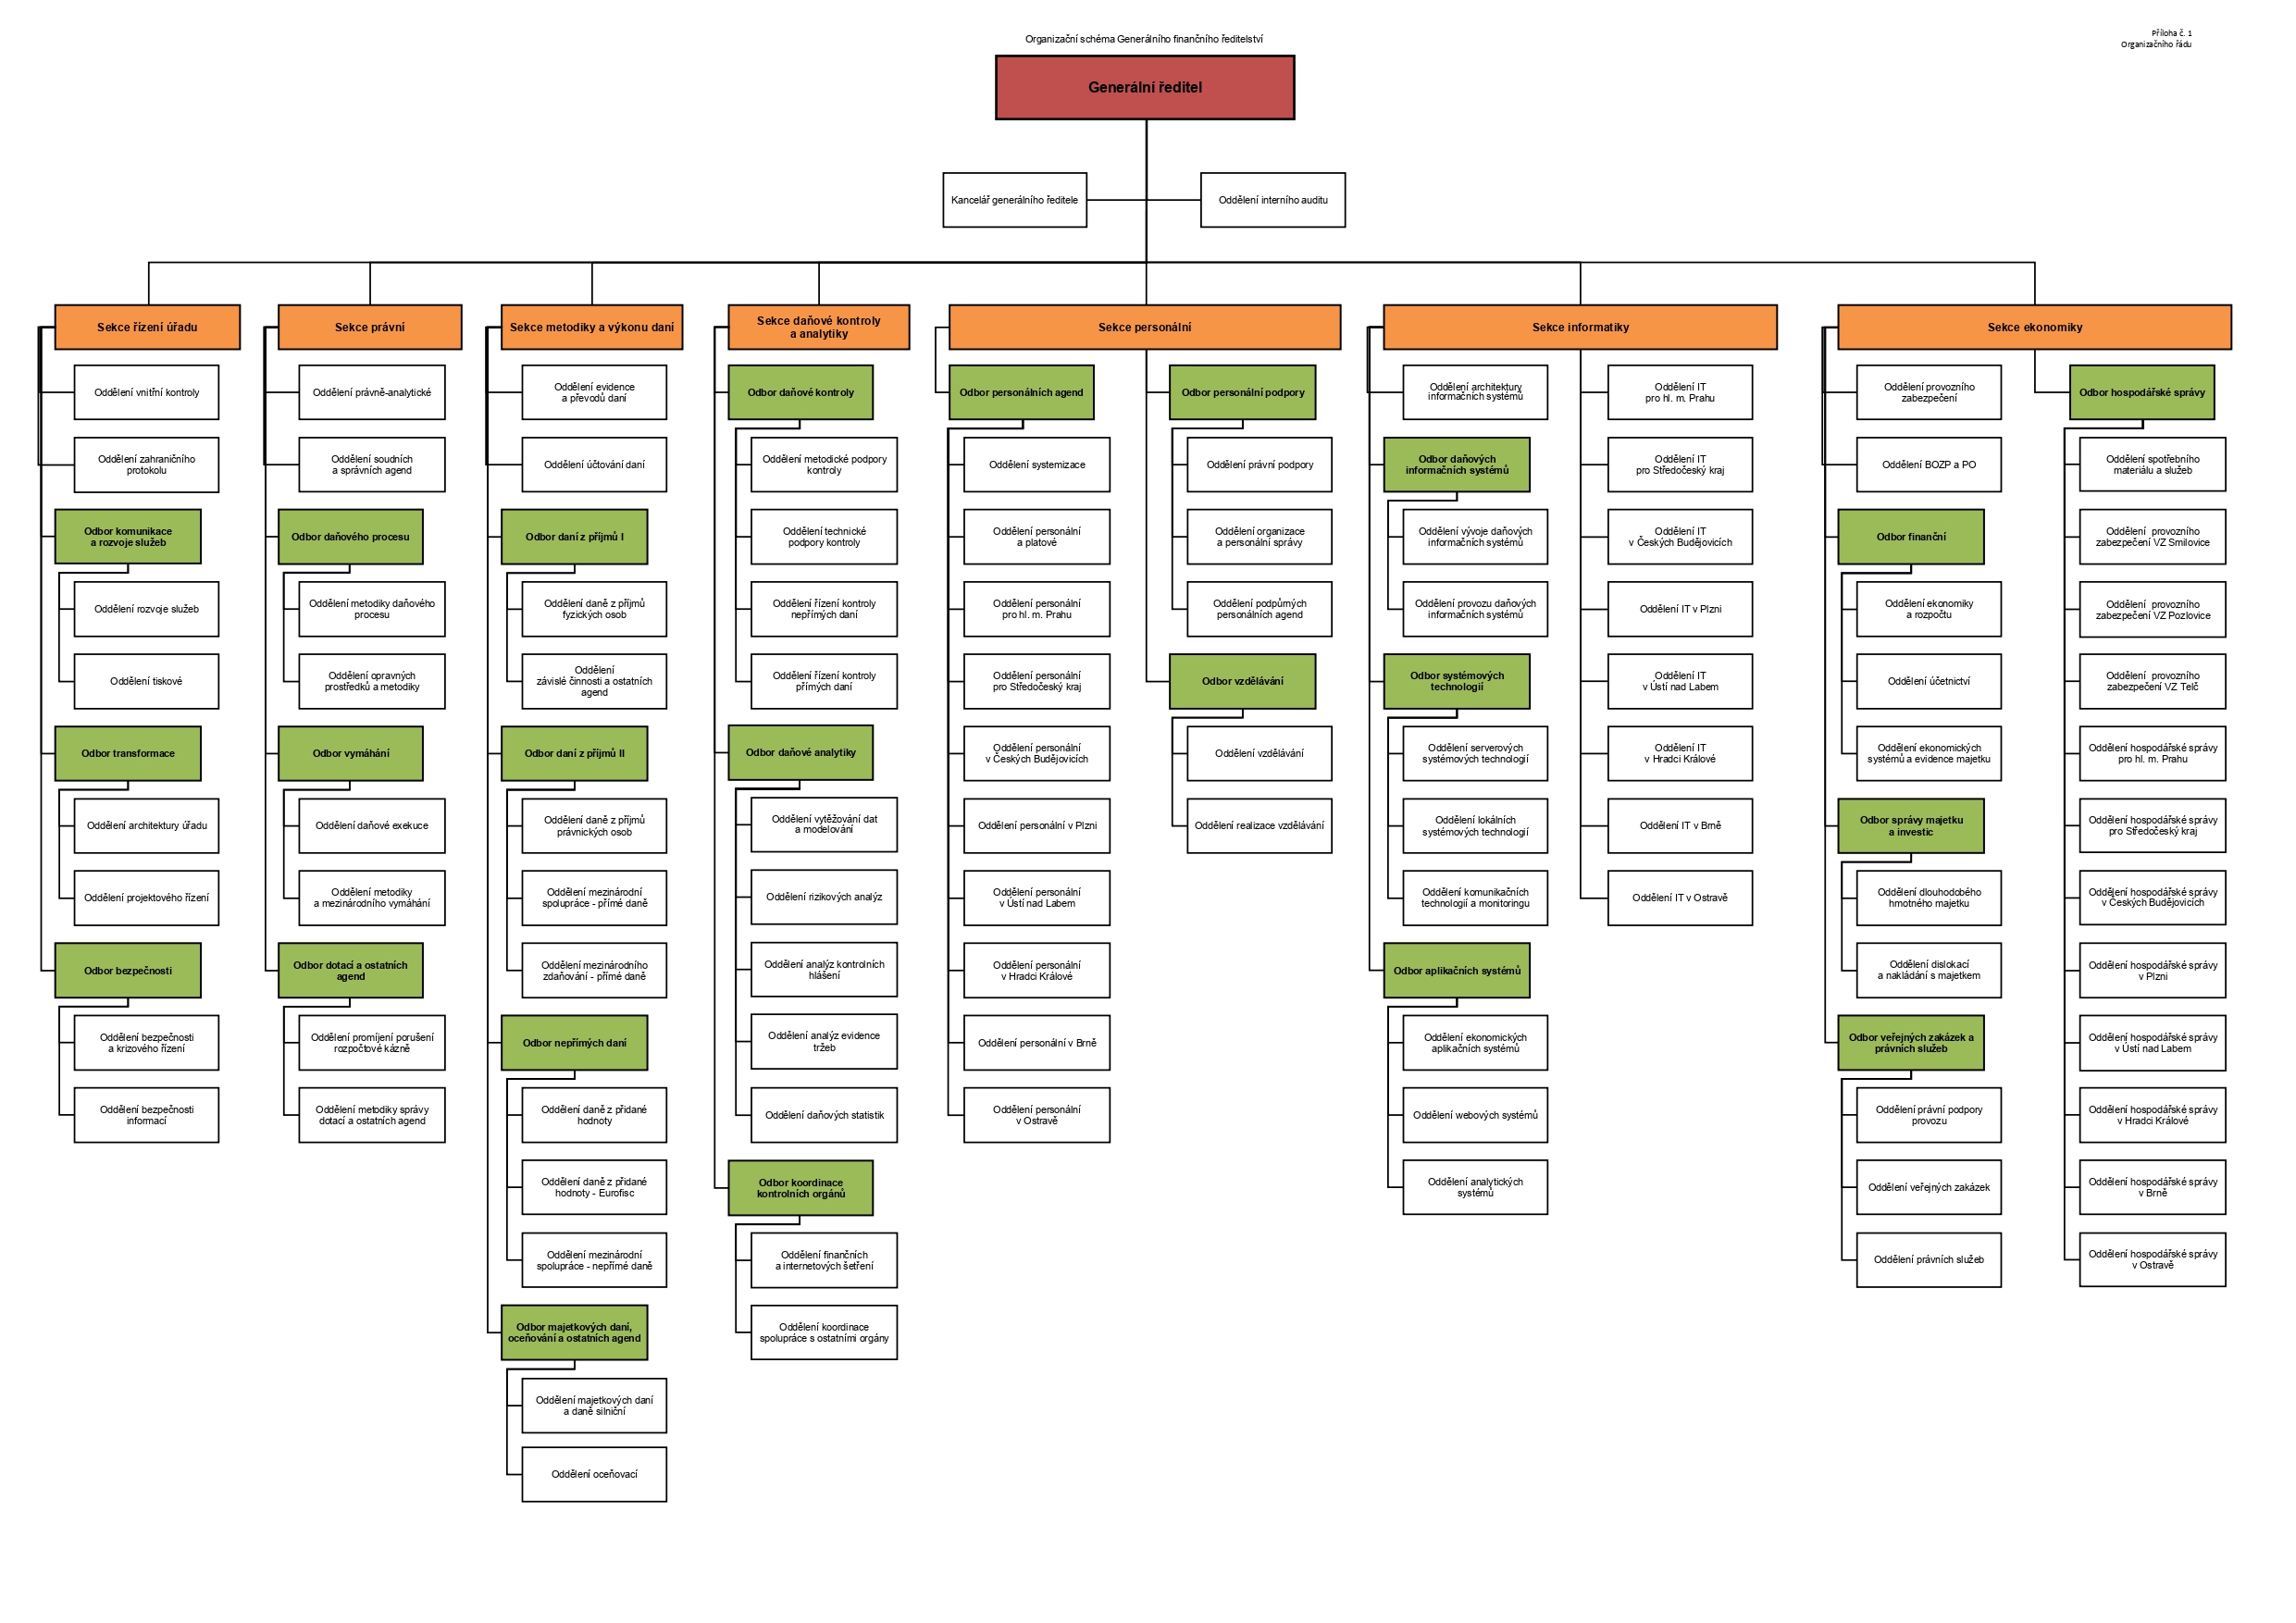 Grafické znázornění organizační struktury